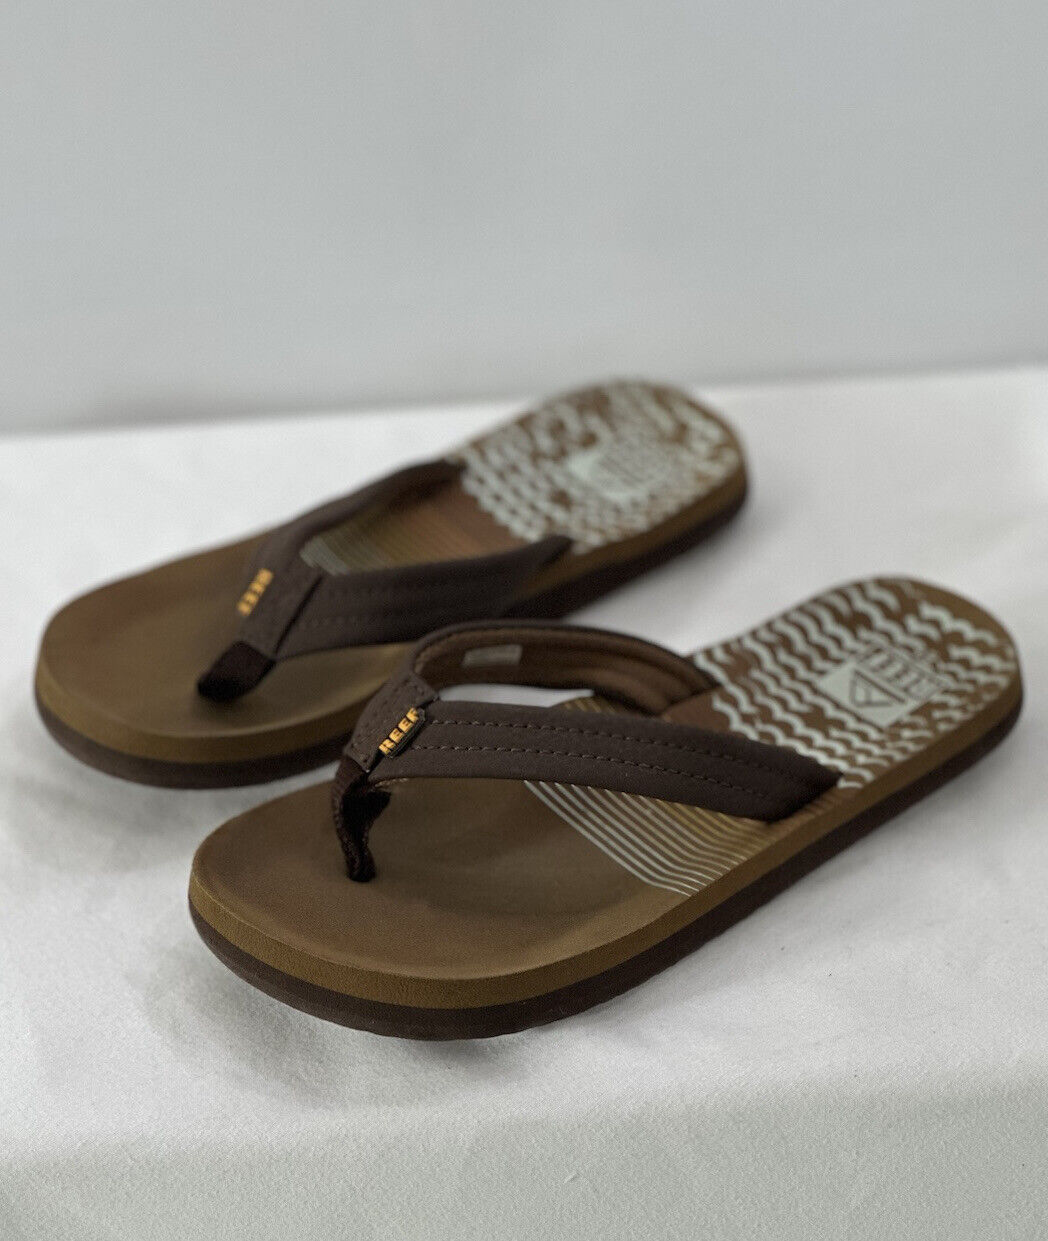 Reef Kids Ahi Sandals Brown/Thong Flip Flops Size 2/3 | eBay